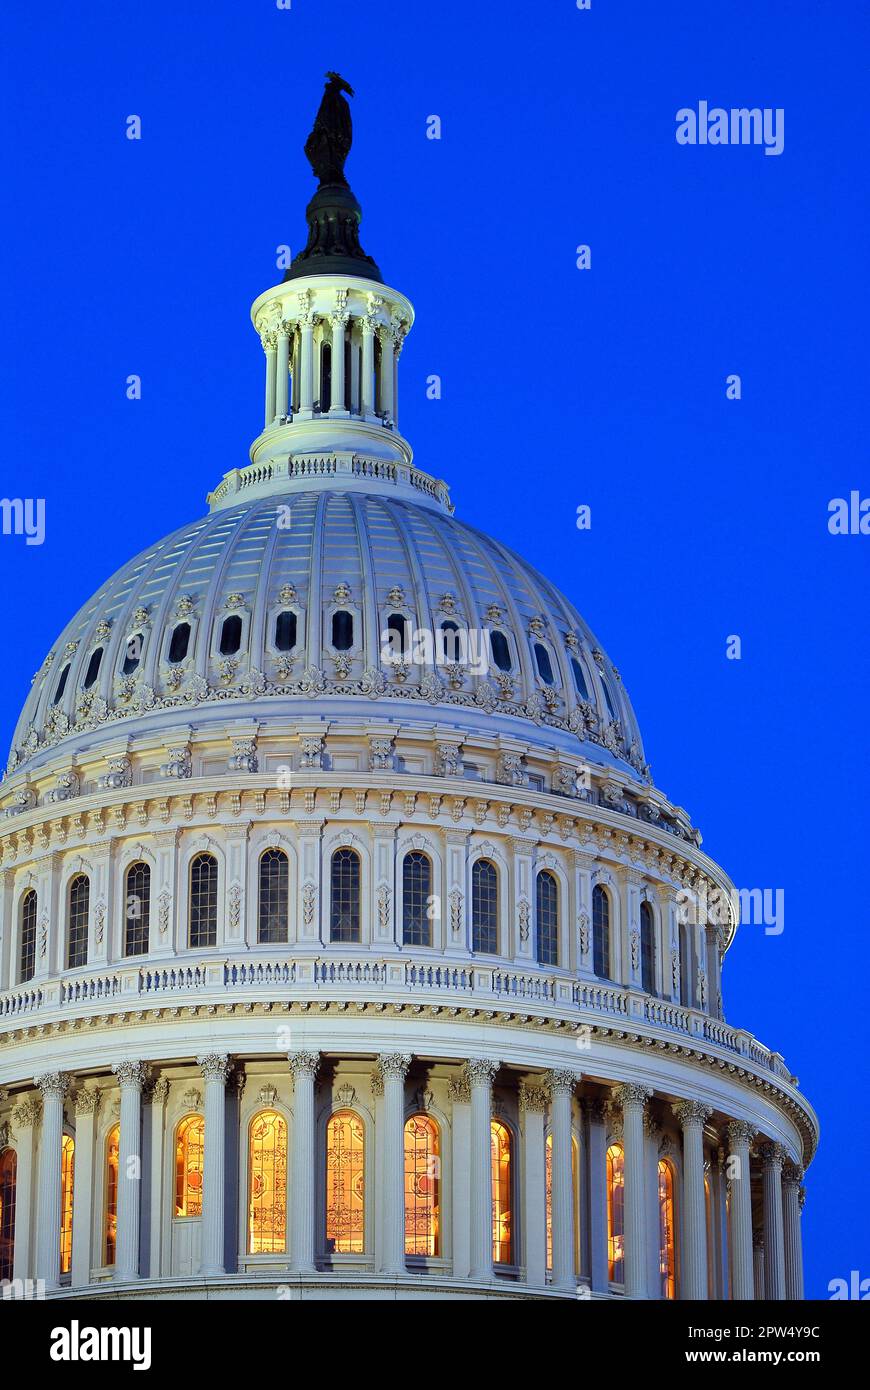 Die Kuppel des Kapitols der Vereinigten Staaten in Washington DC, Heimat der Bundesregierung und der Politik, ist nachts beleuchtet Stockfoto